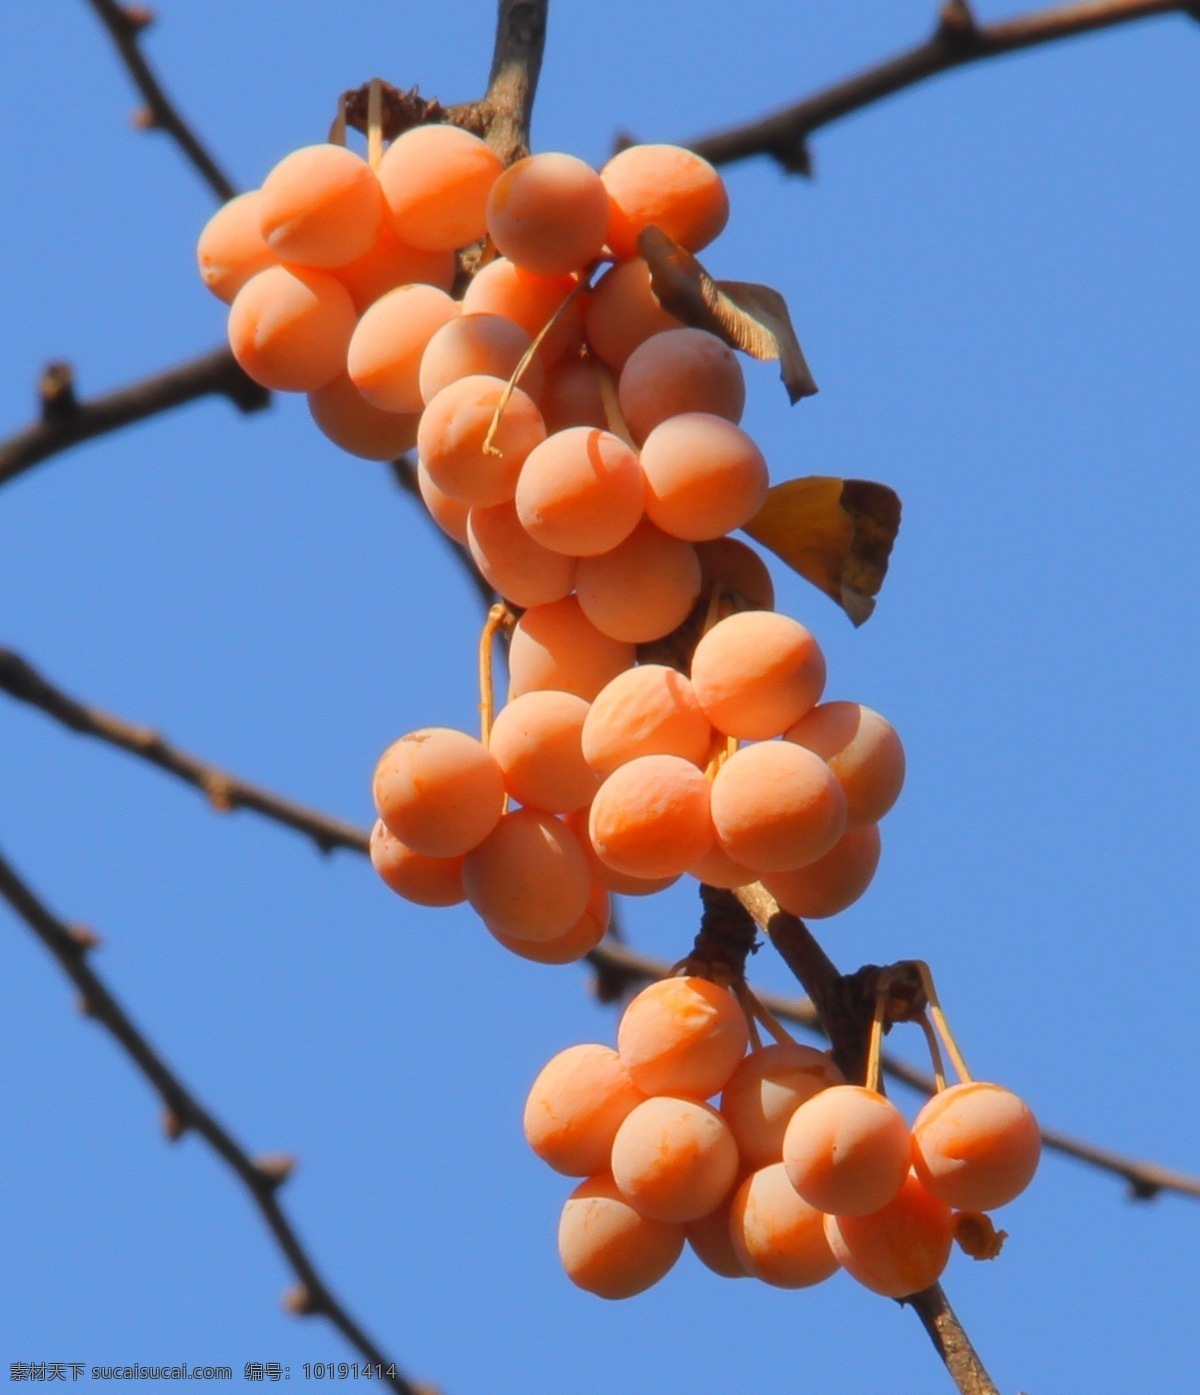 蓝天 阳光 银杏 树枝 水果 生物世界